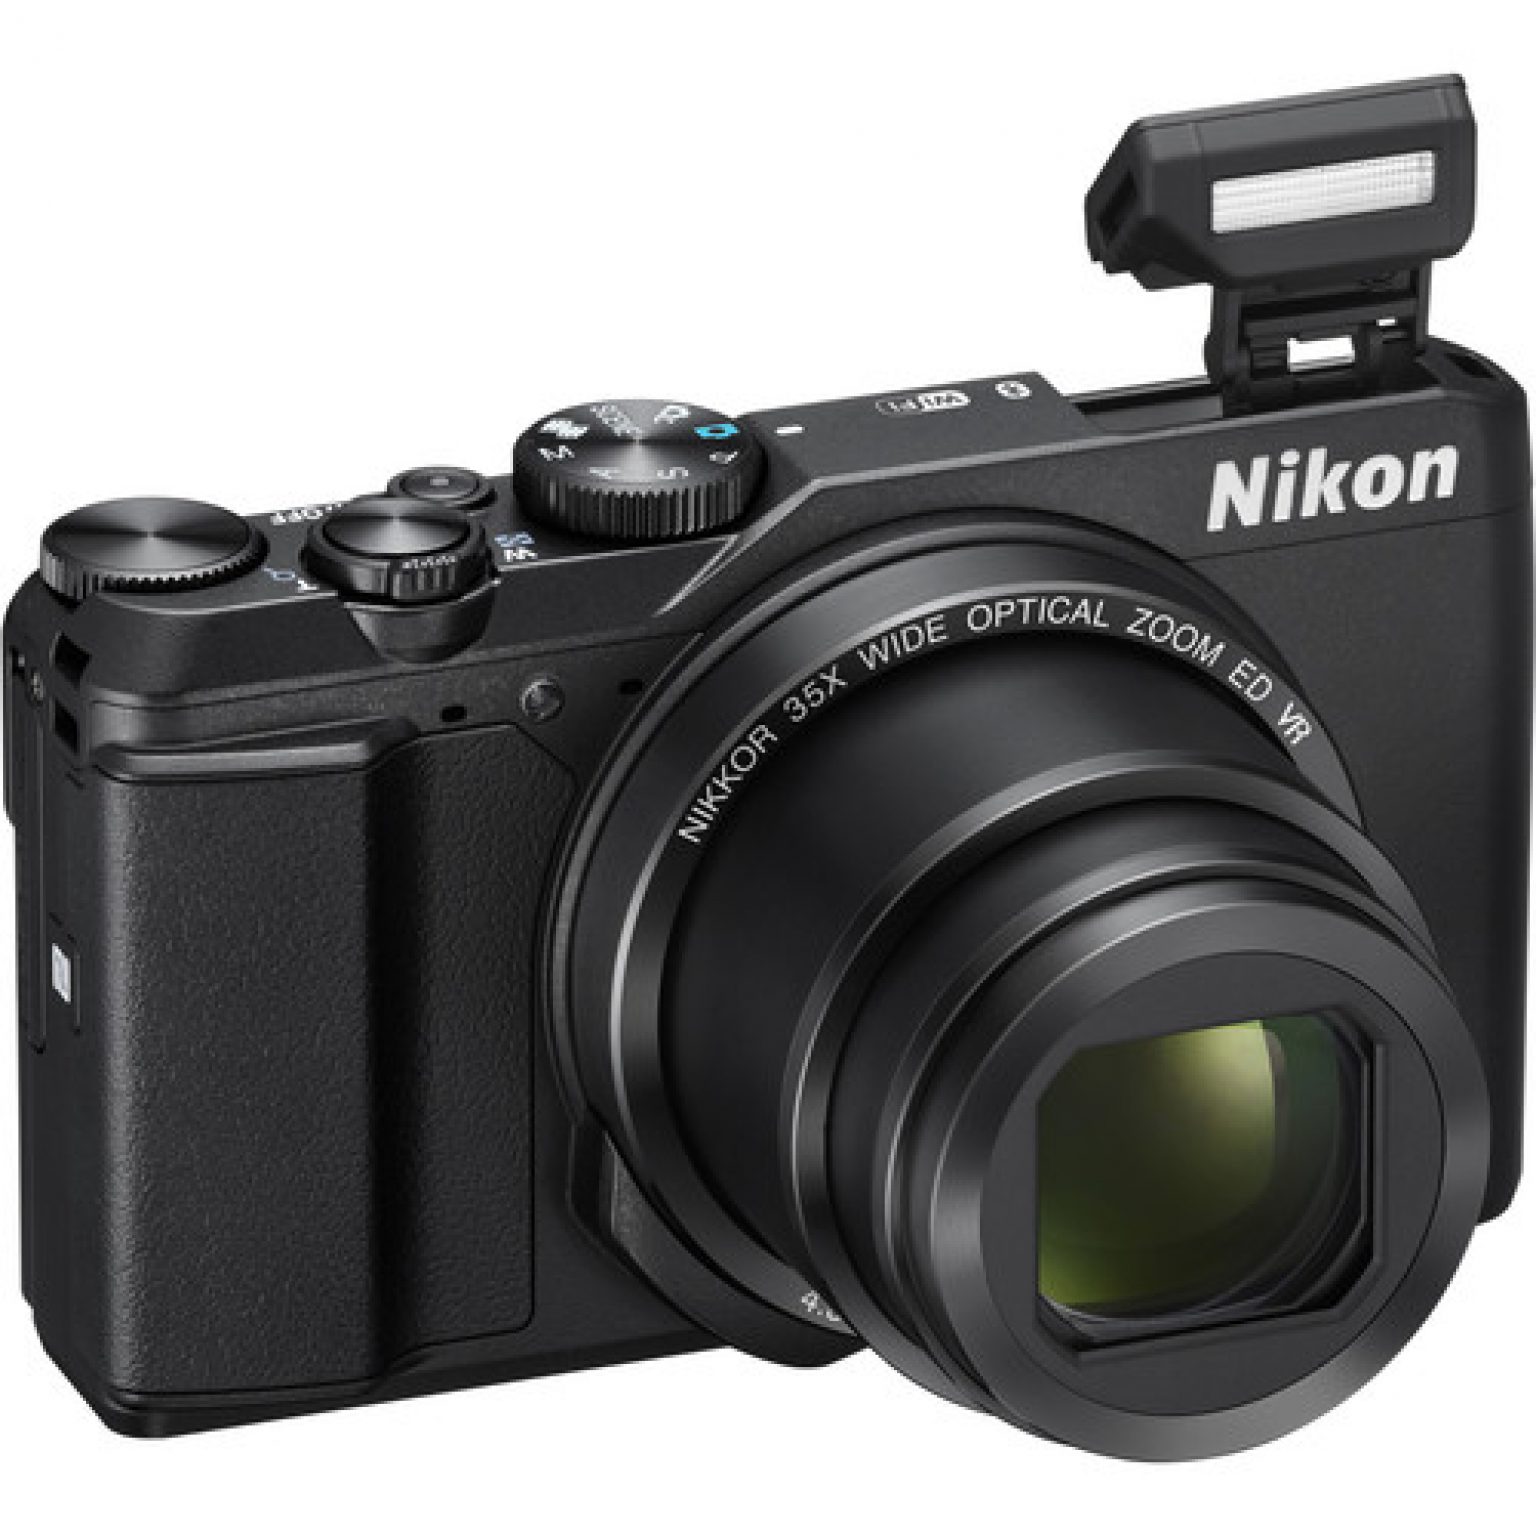 Nikon A900 B 2